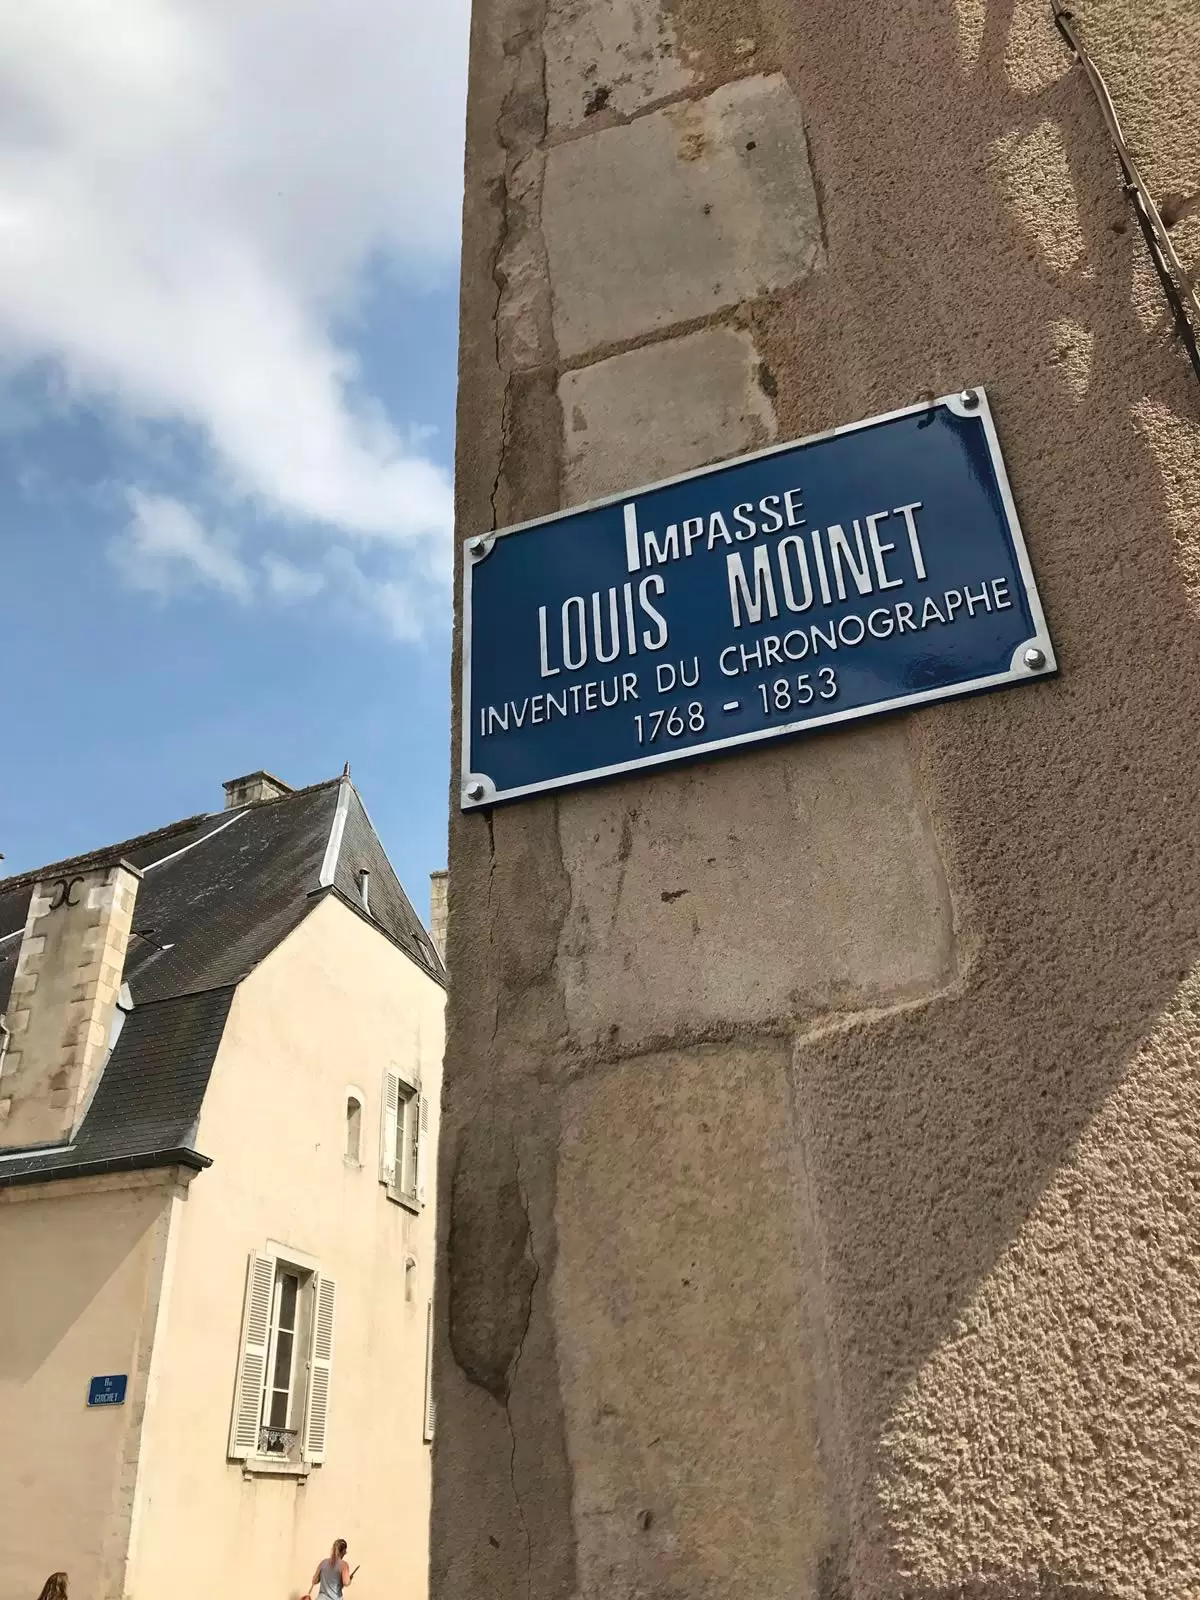 Bourges, via dedicata al talentuoso Louis Moinet, fondatore del Marchio